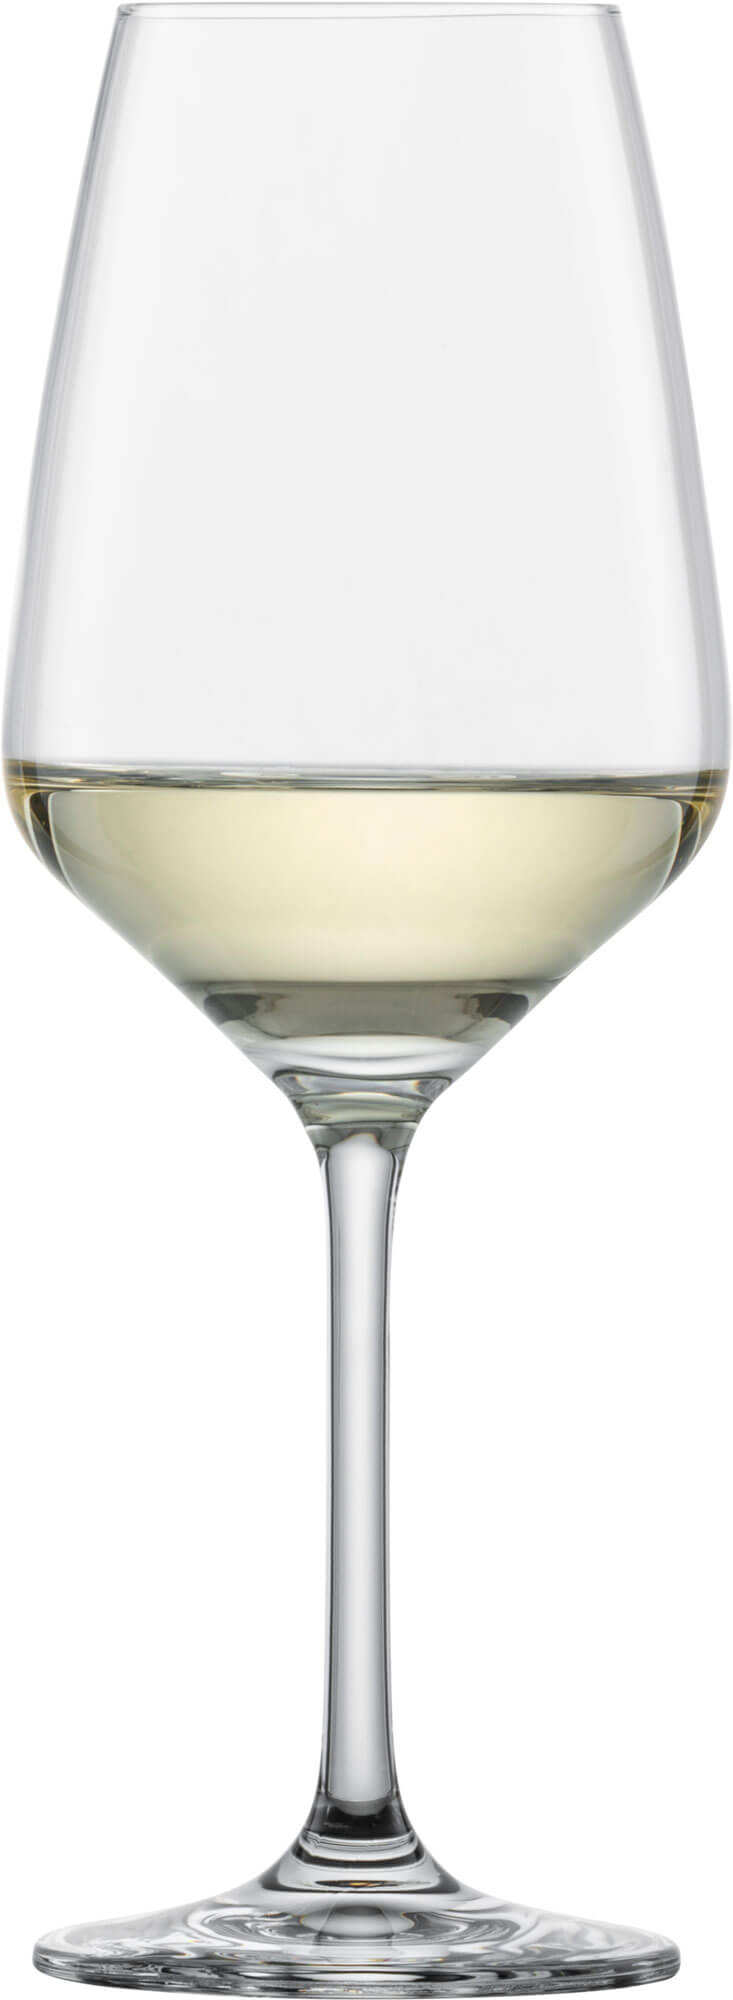 Weißweinglas Taste, Schott Zwiesel - 356ml, 0,2l Eiche (6 Stk.)